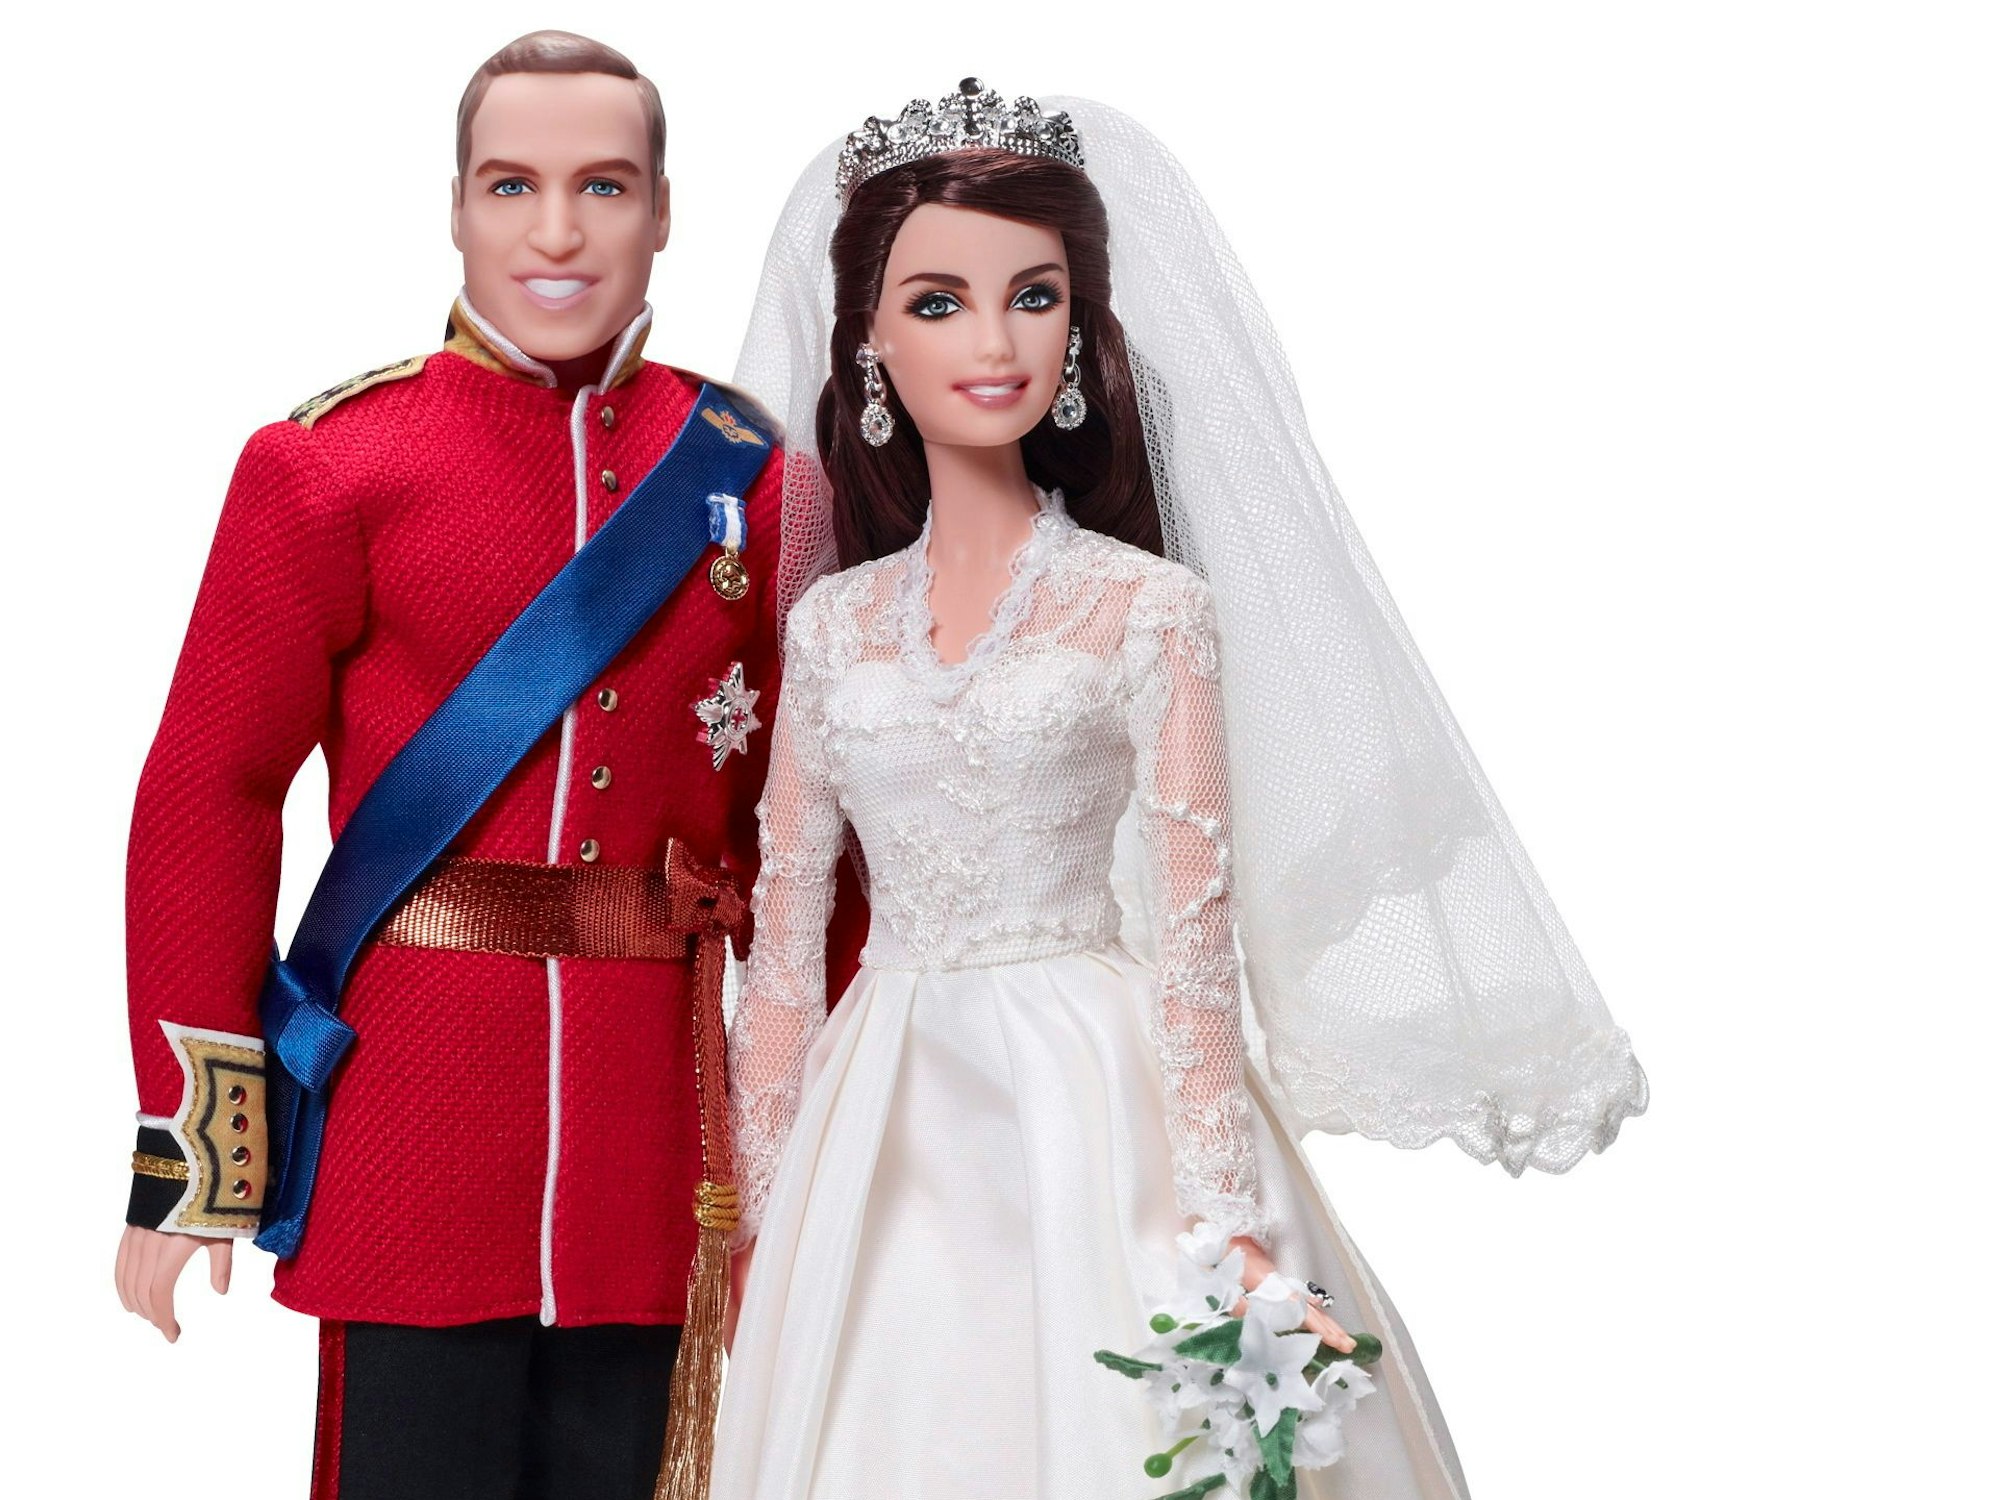 Prinz William und Herzogin Kate als Barbiepuppen, herausgegeben 2012.